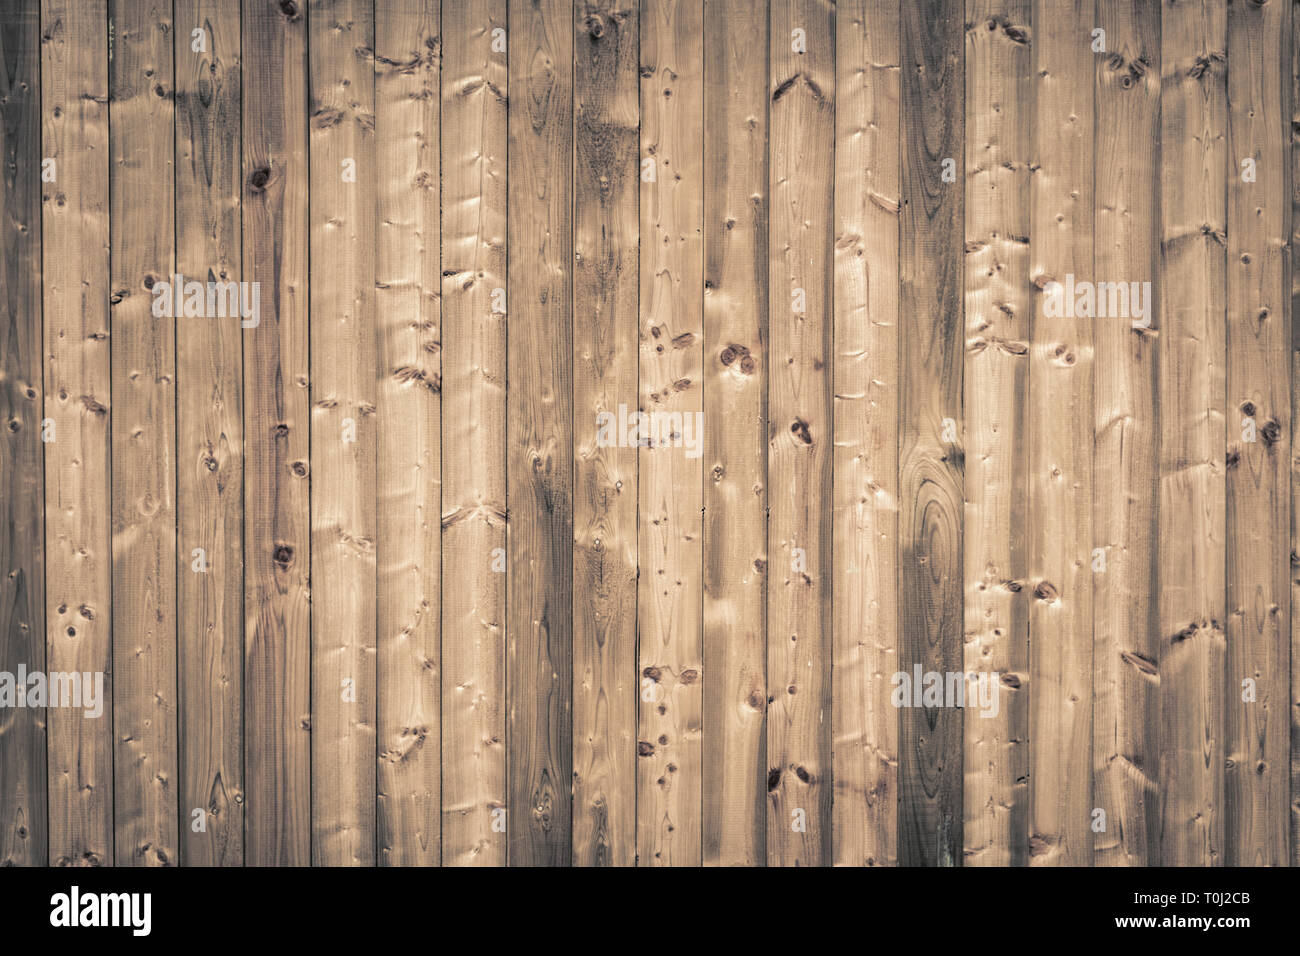 Holzbrett Hintergrund - Laufbelag Wand, Holz Textur Stockfoto